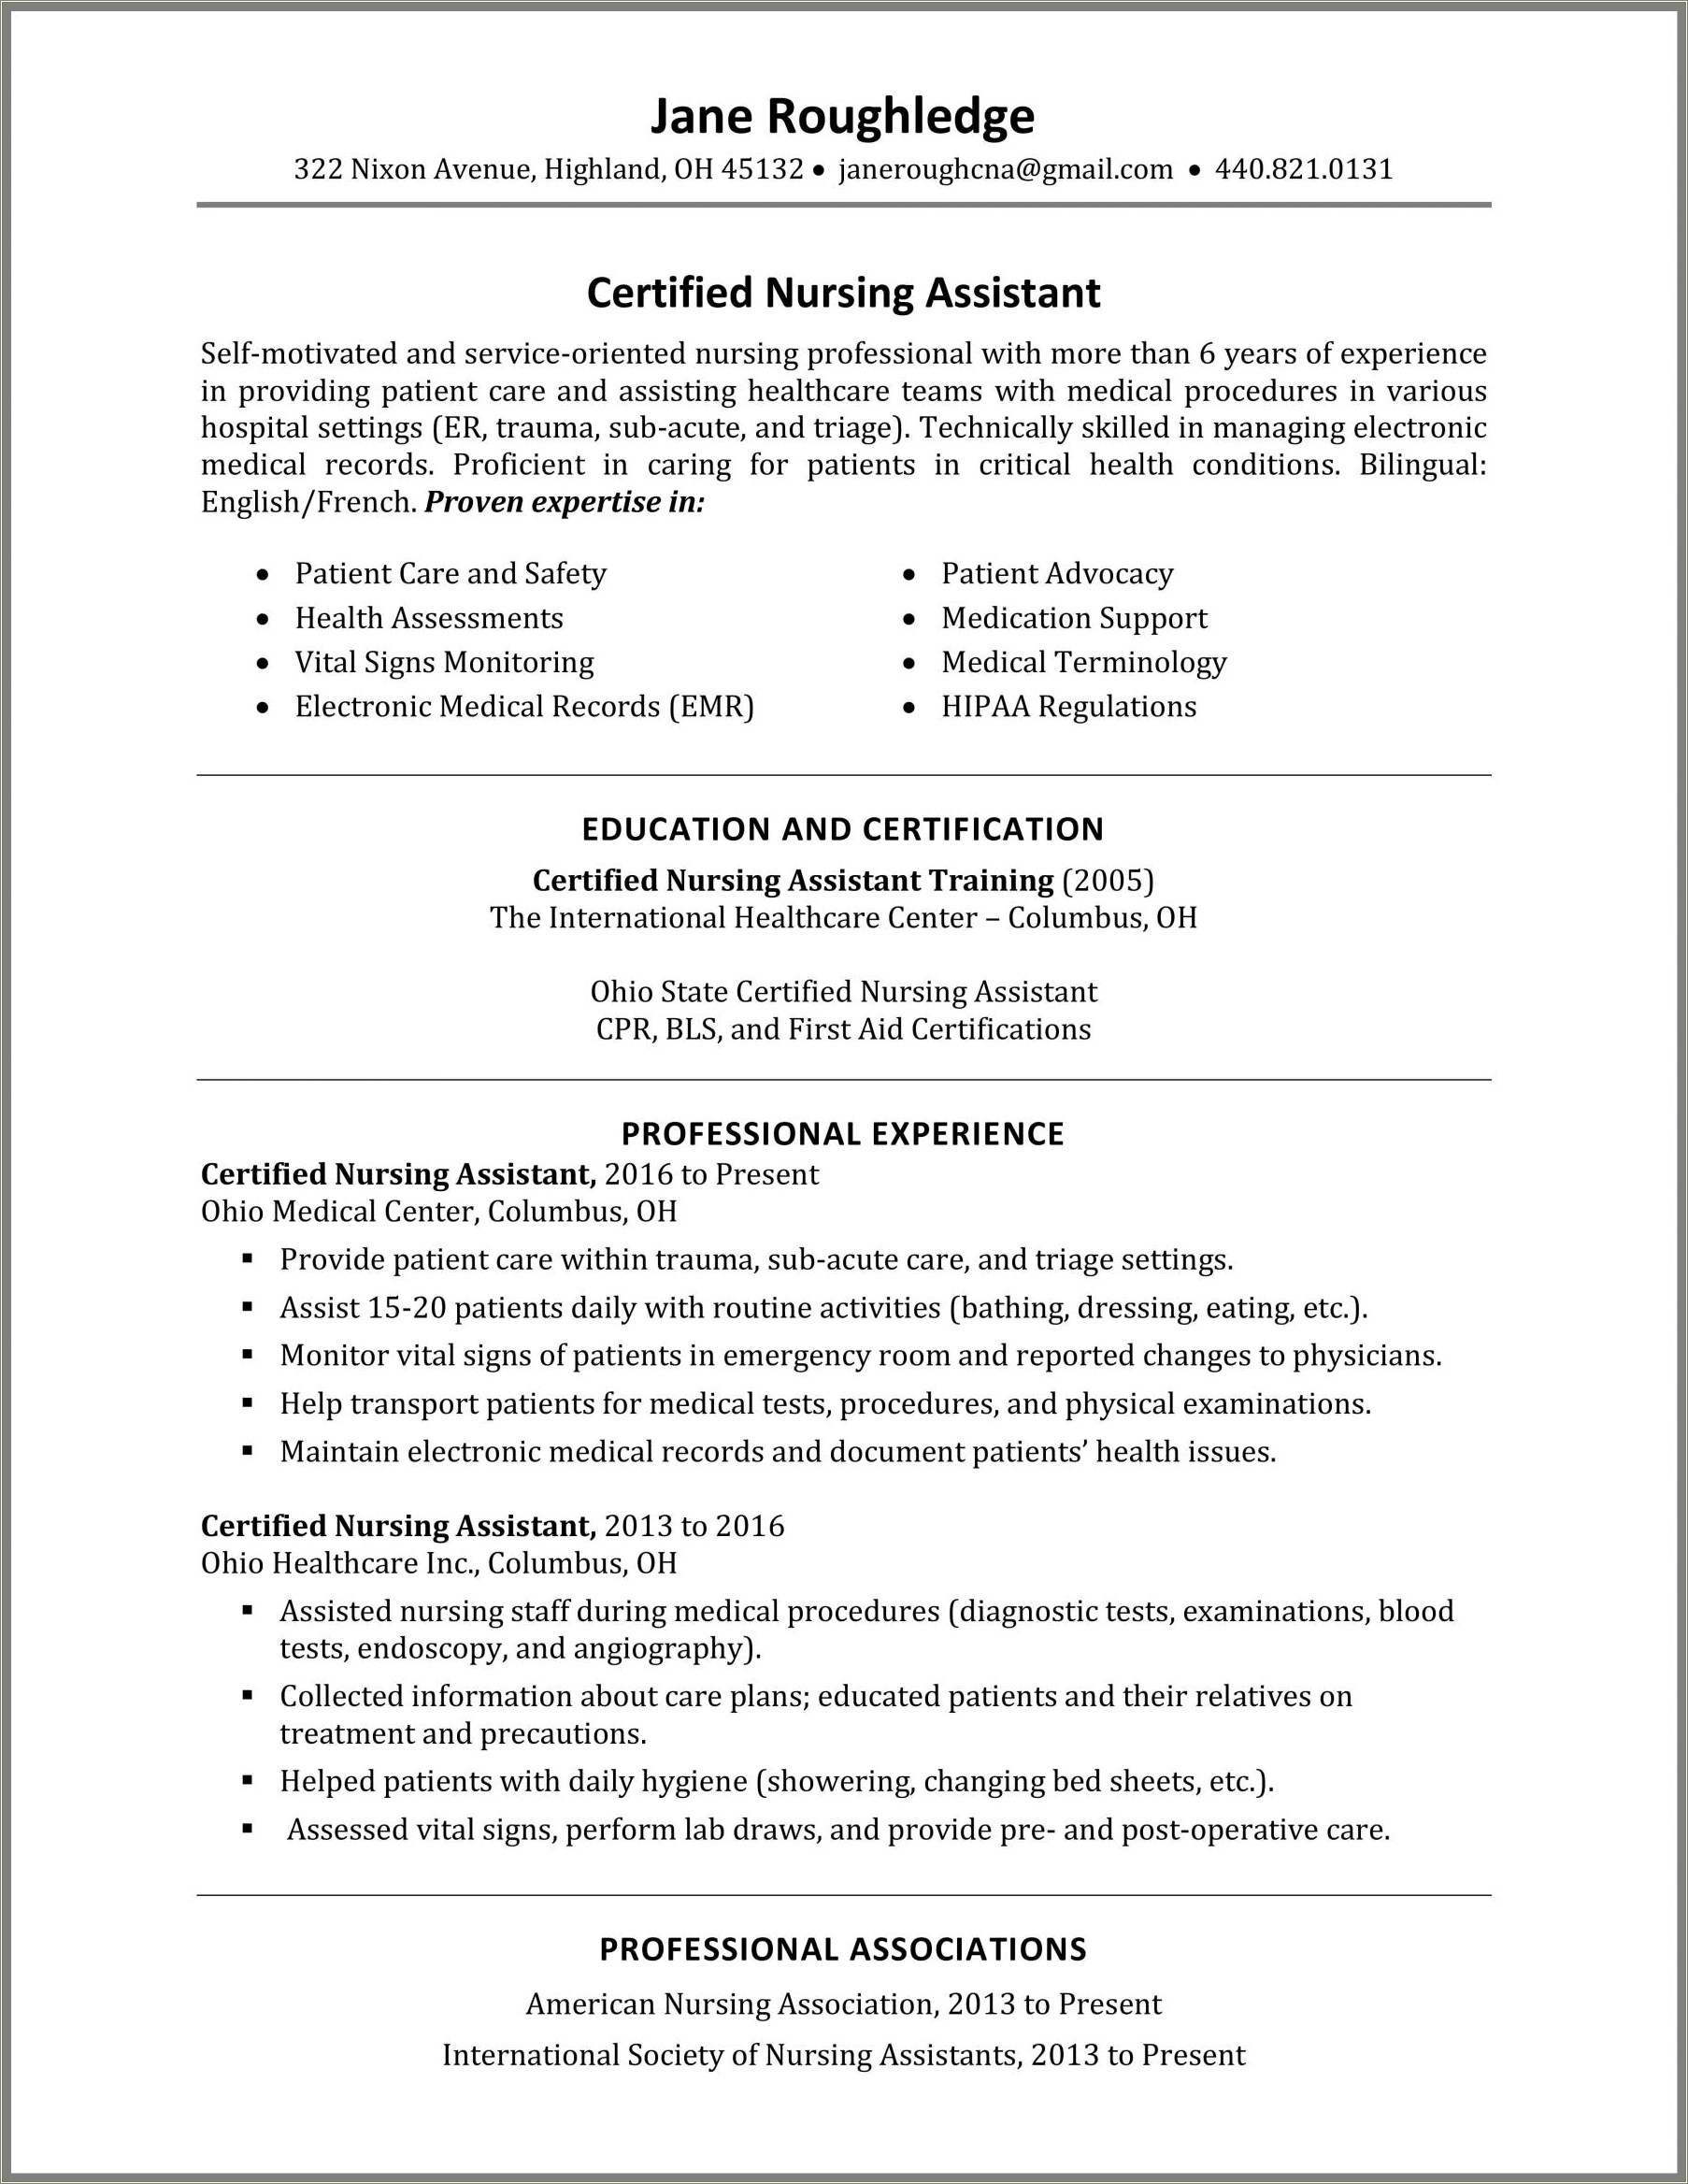 Description Of A Nursing Assistant On A Resume